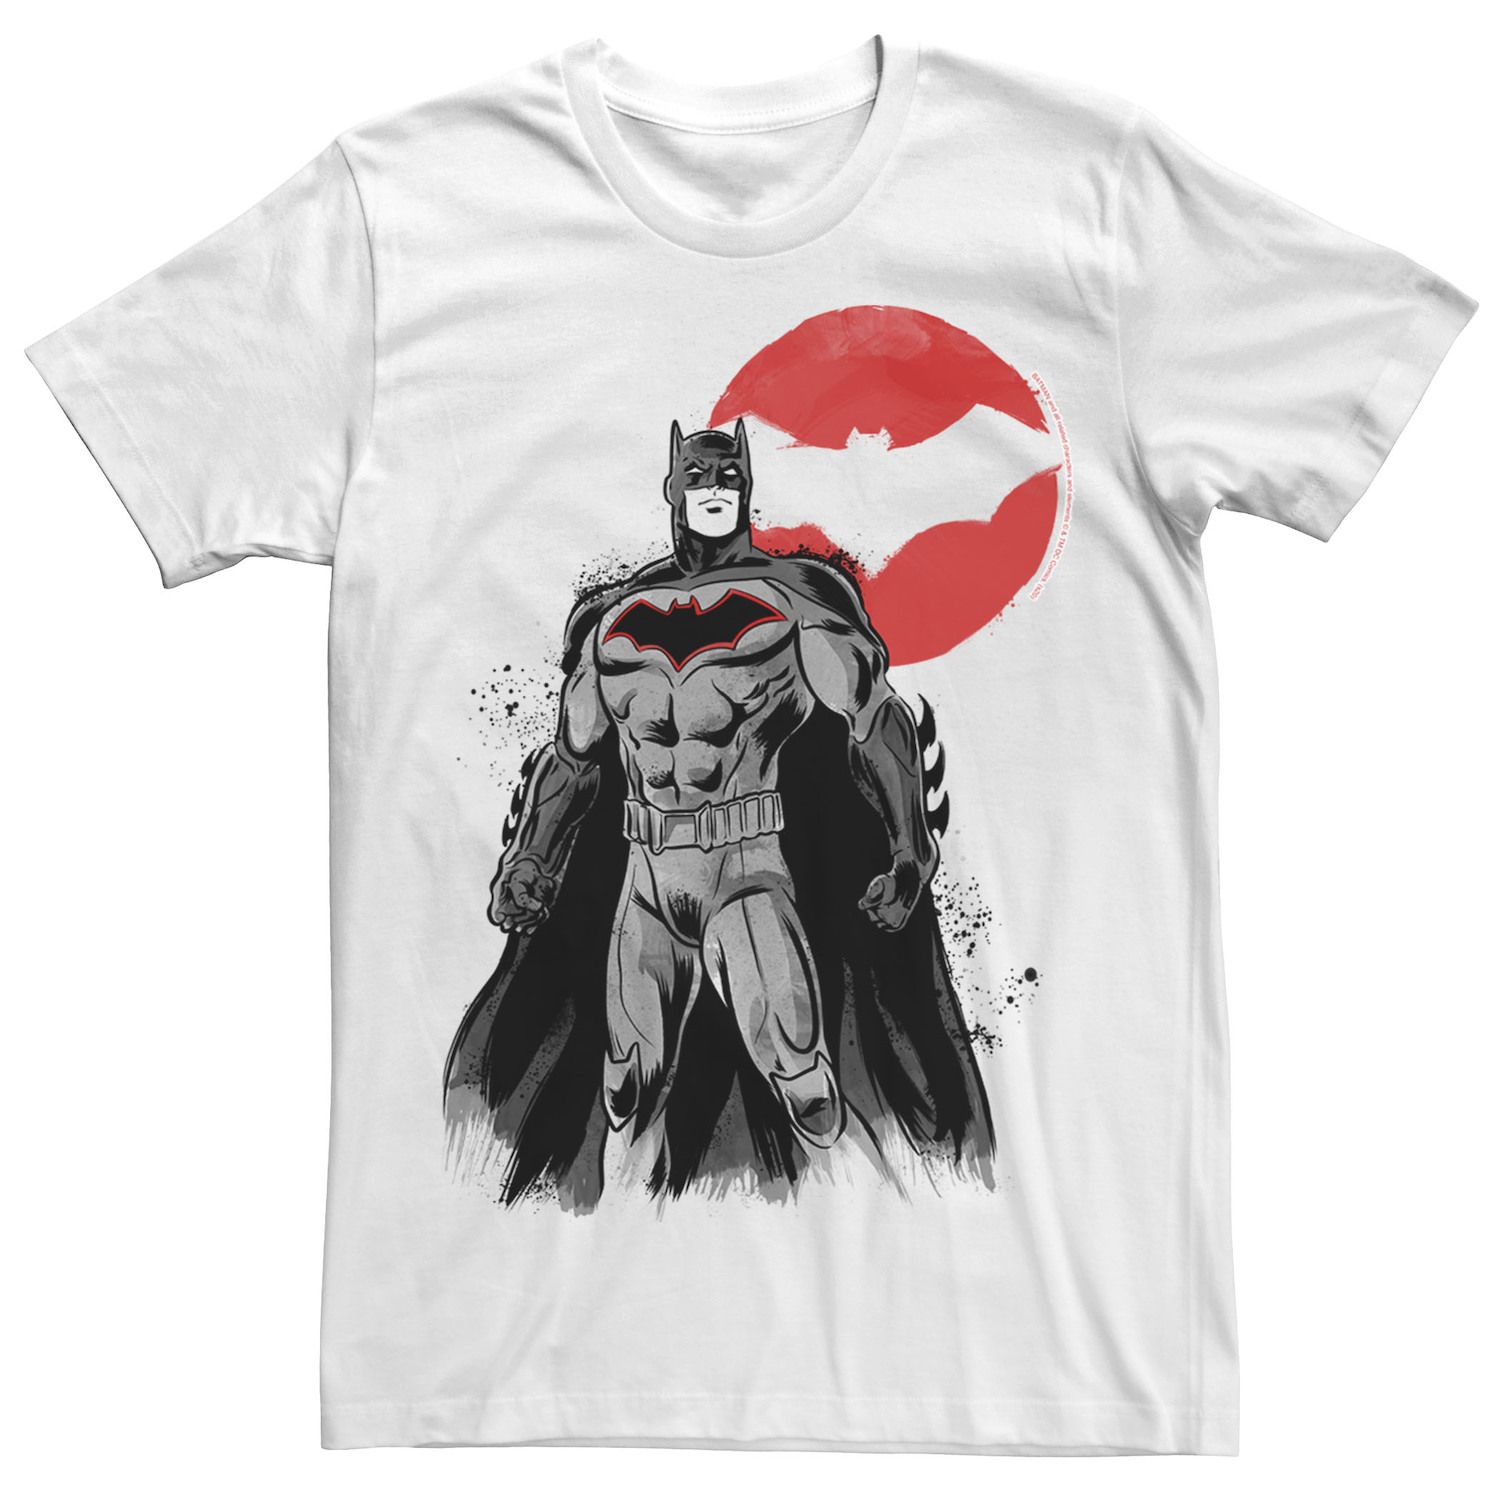 Мужская футболка с плакатом в стиле кандзи «Бэтмен» Licensed Character